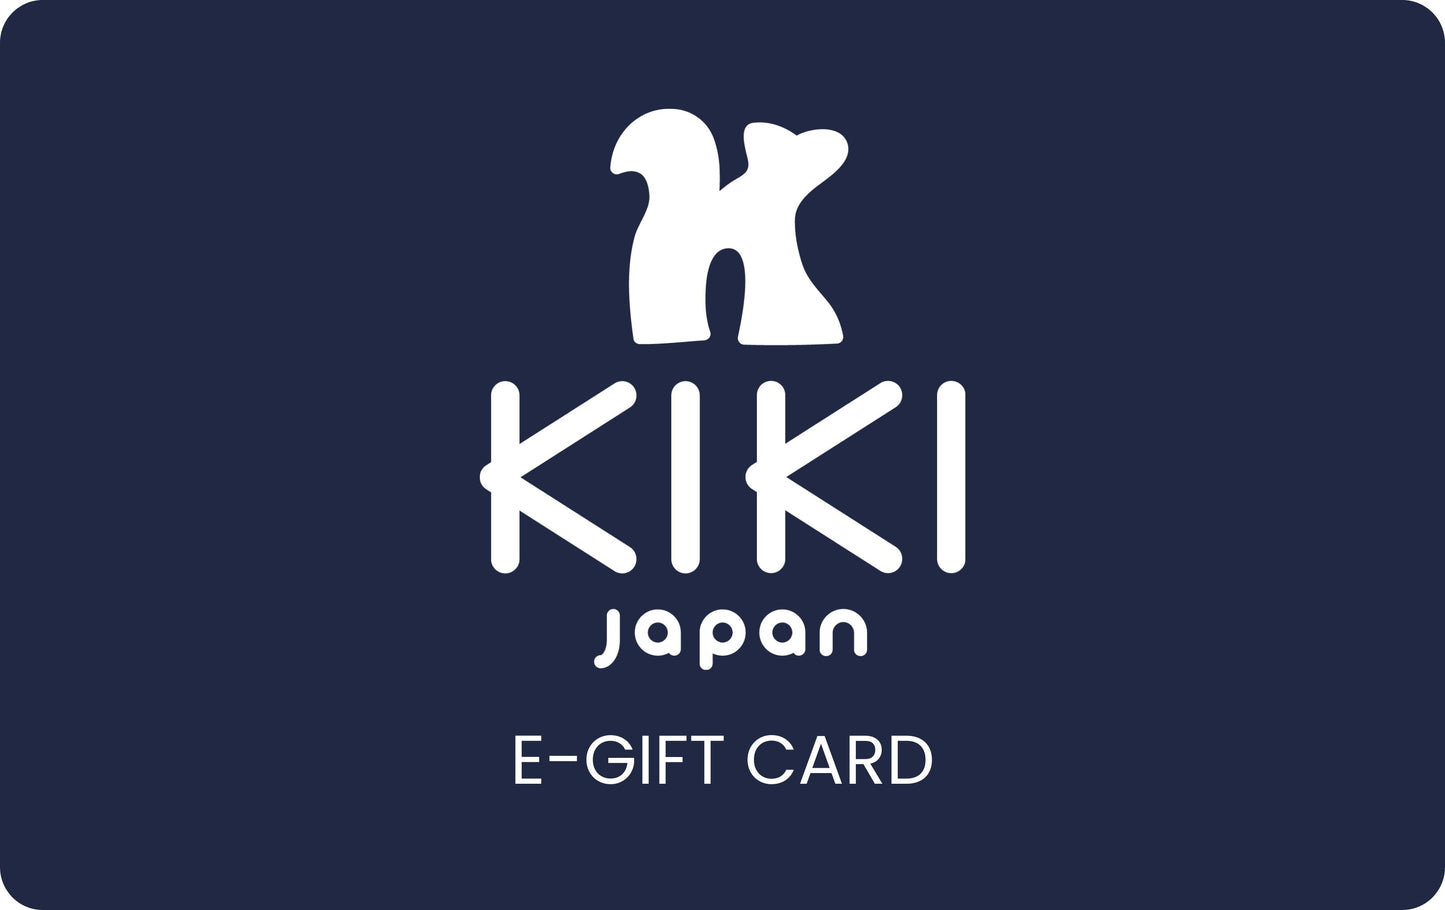 KIKI Japan E-Gift Card